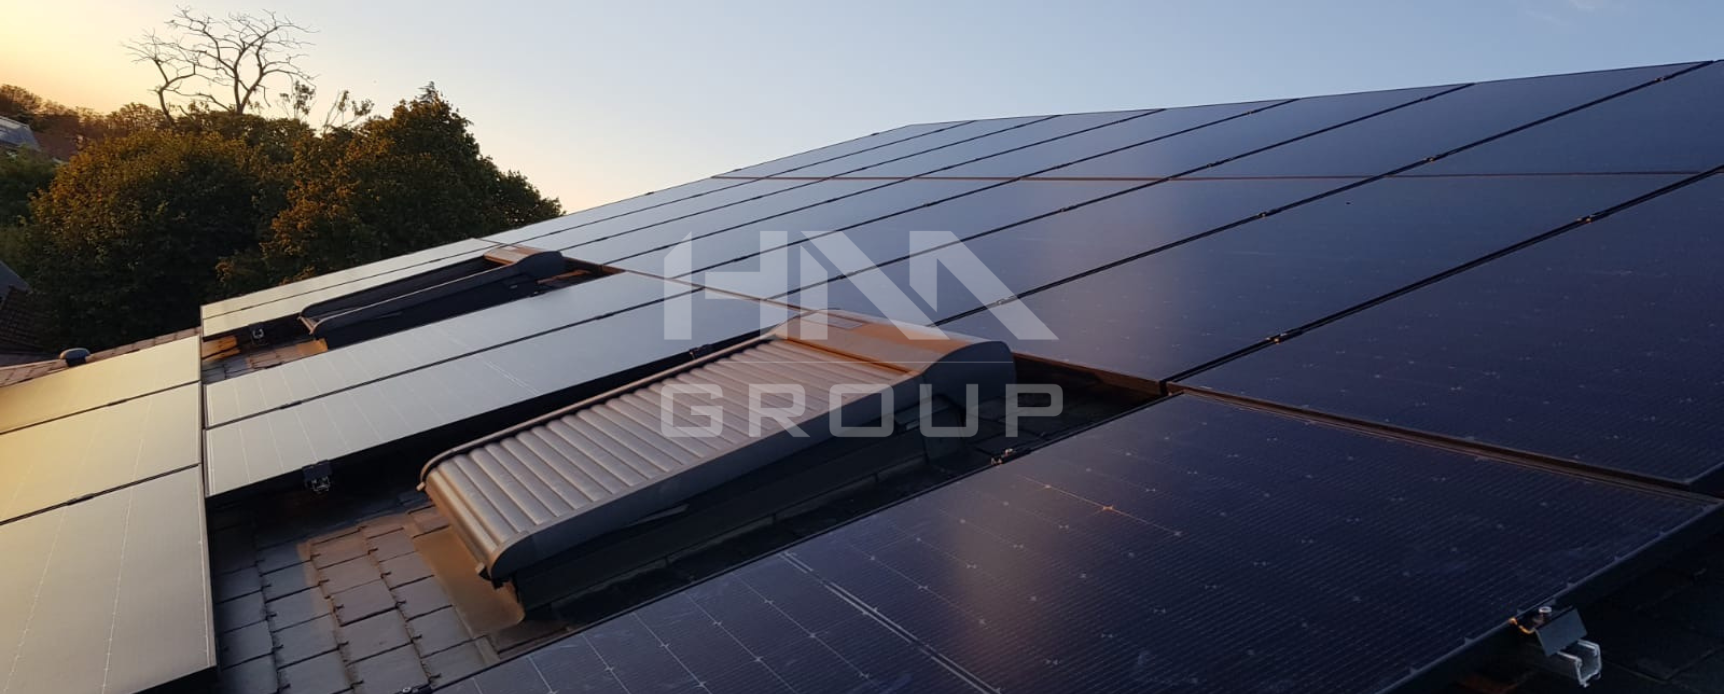 panneaux photovoltaïques partage d'énergie